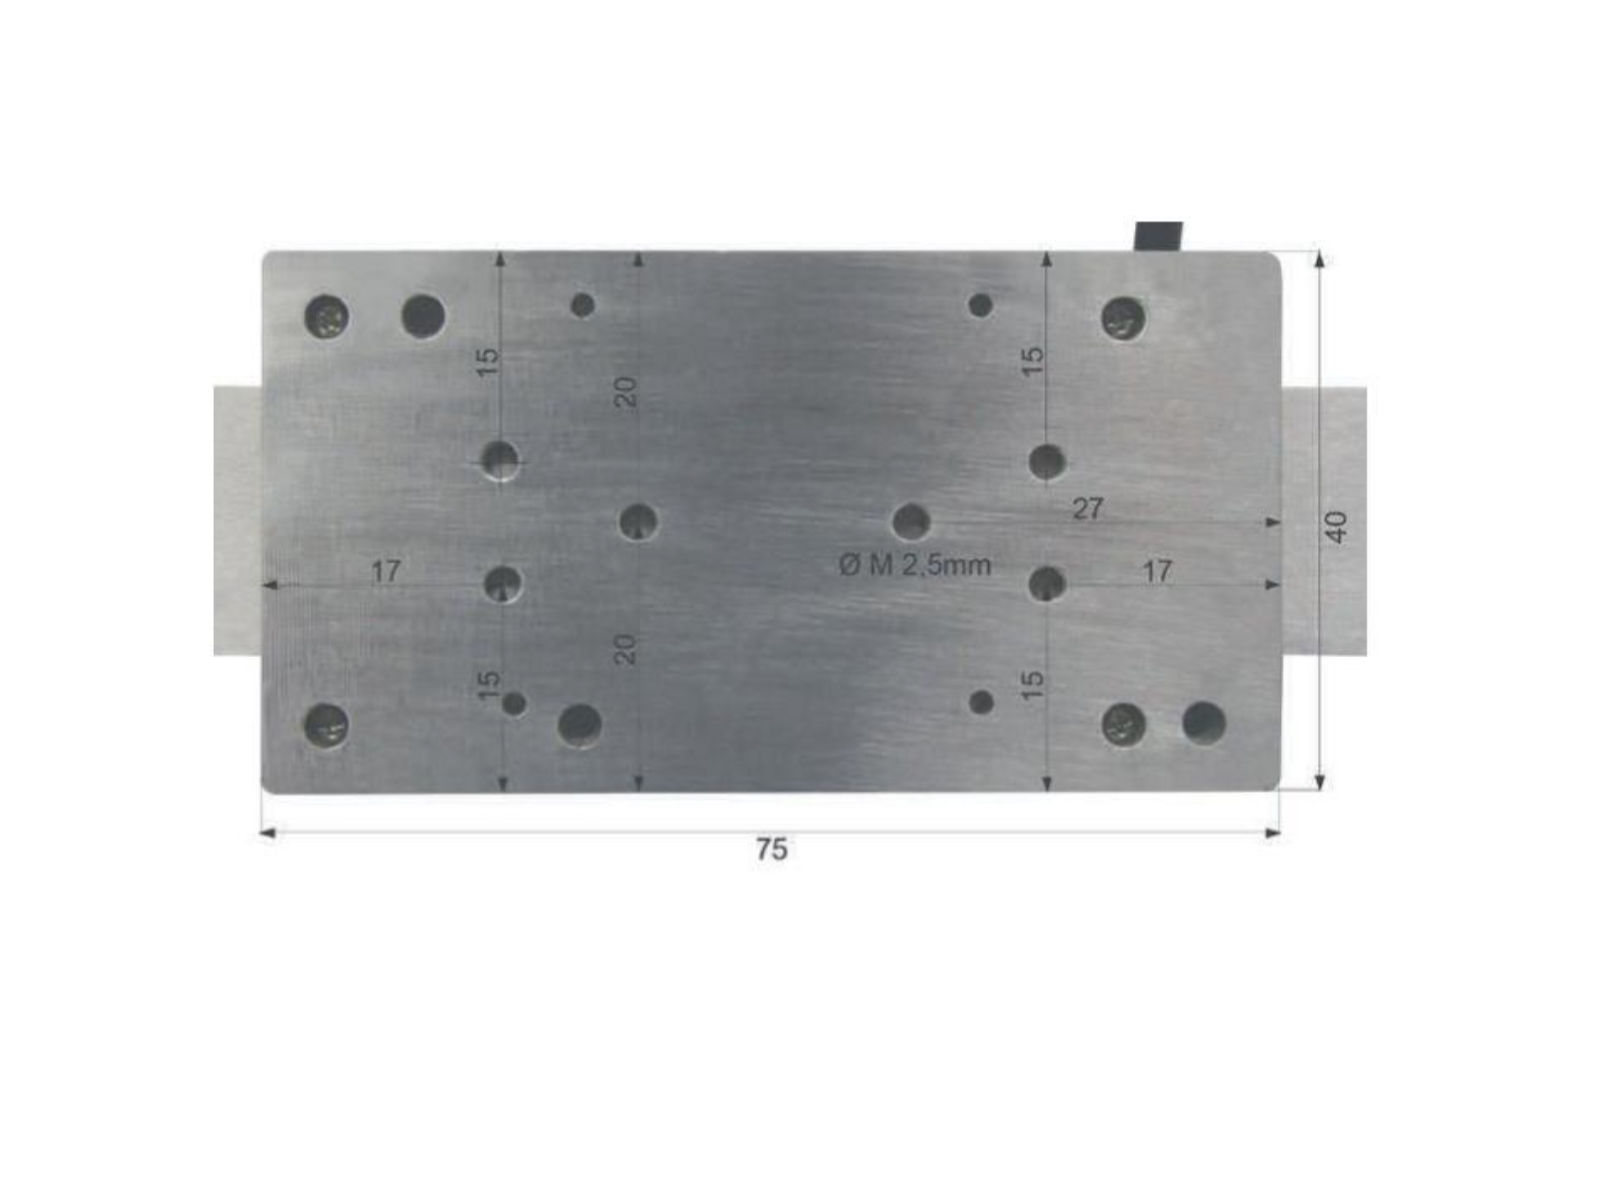 Digitaler Anbaumessschieber vertikal - mit Bluetooth® 1000 mm / 40 inch